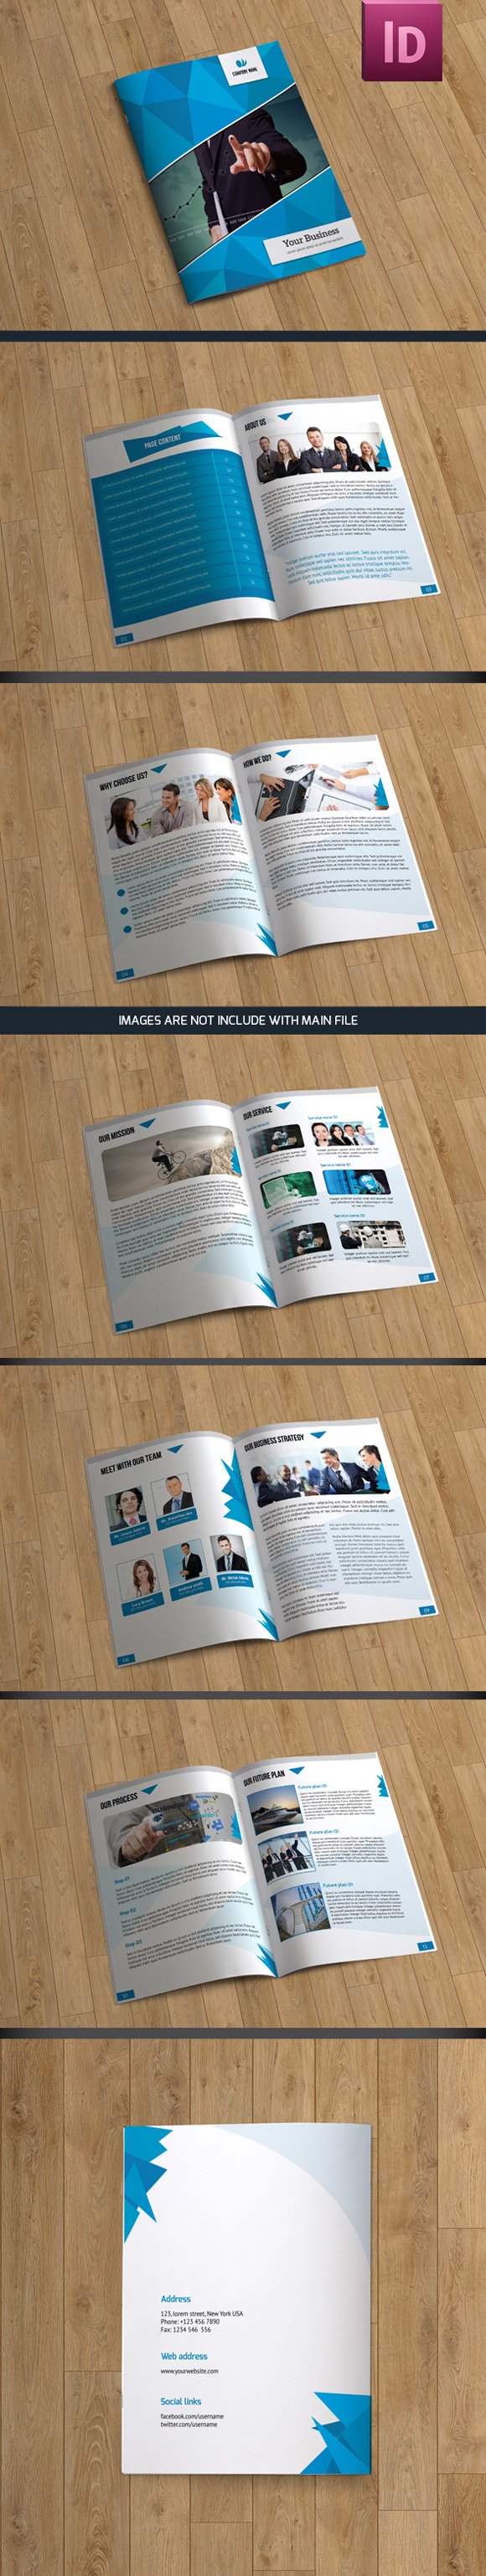 InDesign Business Brochure - V27 cover image.